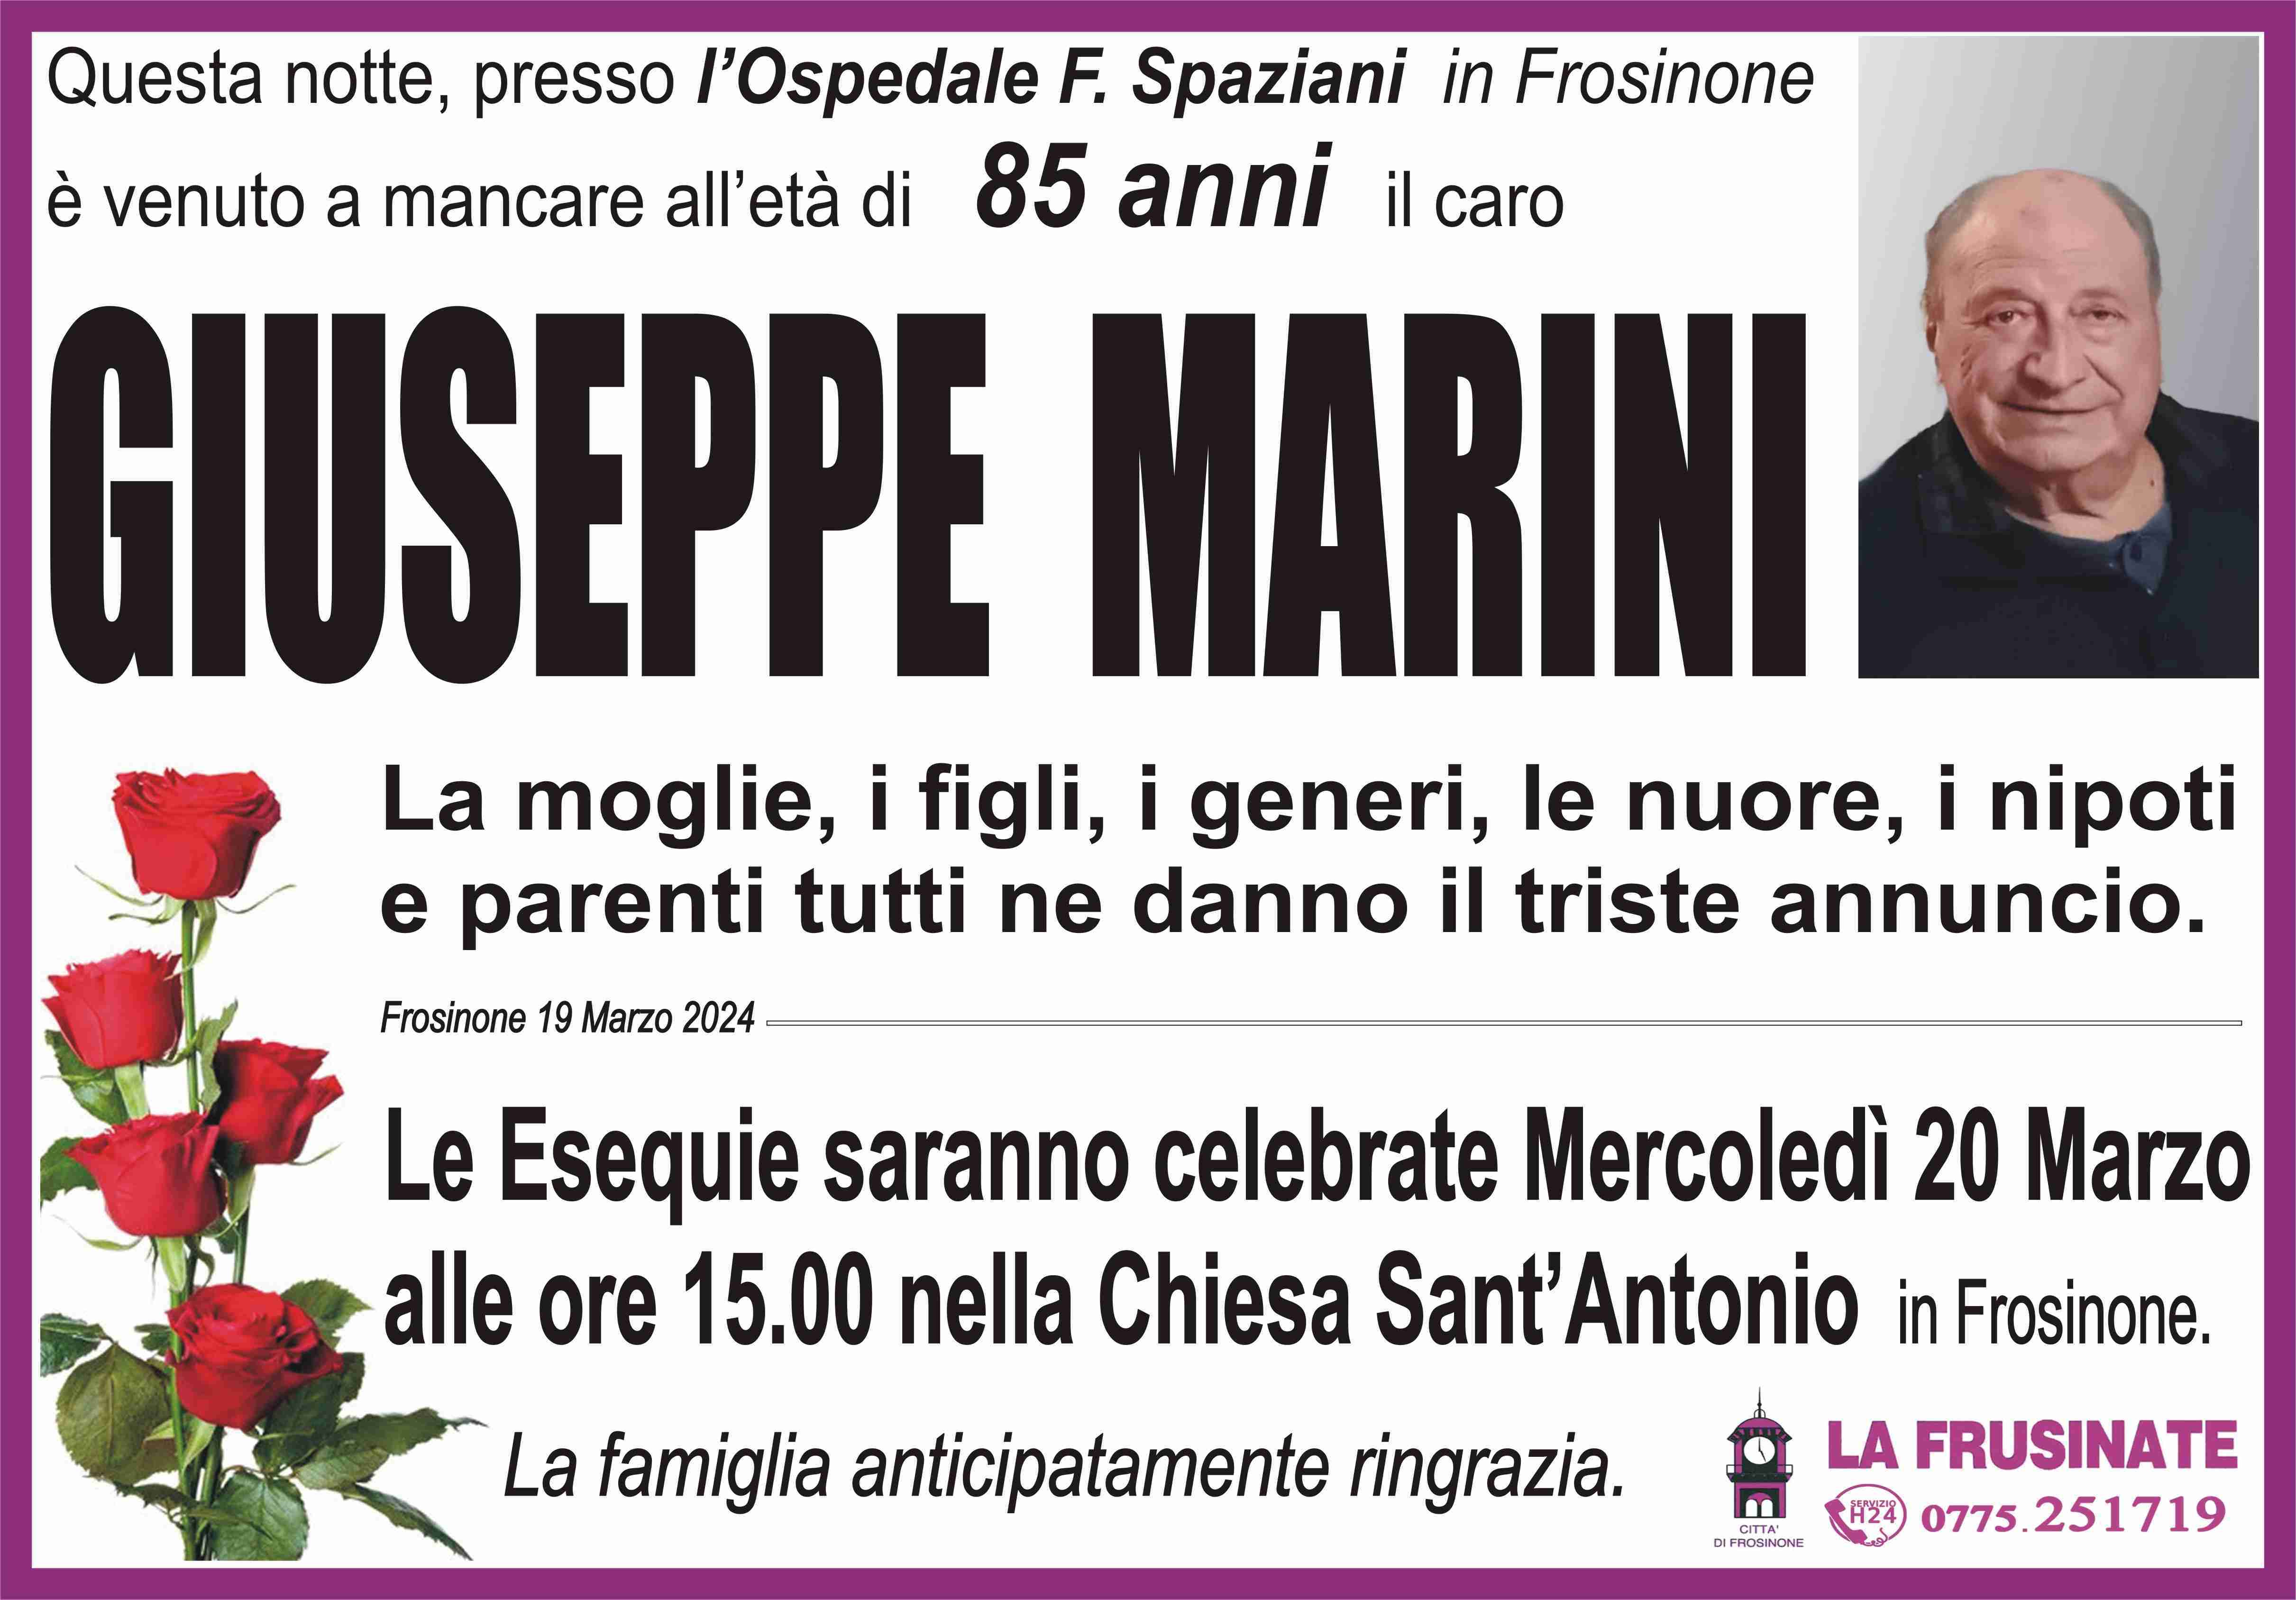 Giuseppe Marini